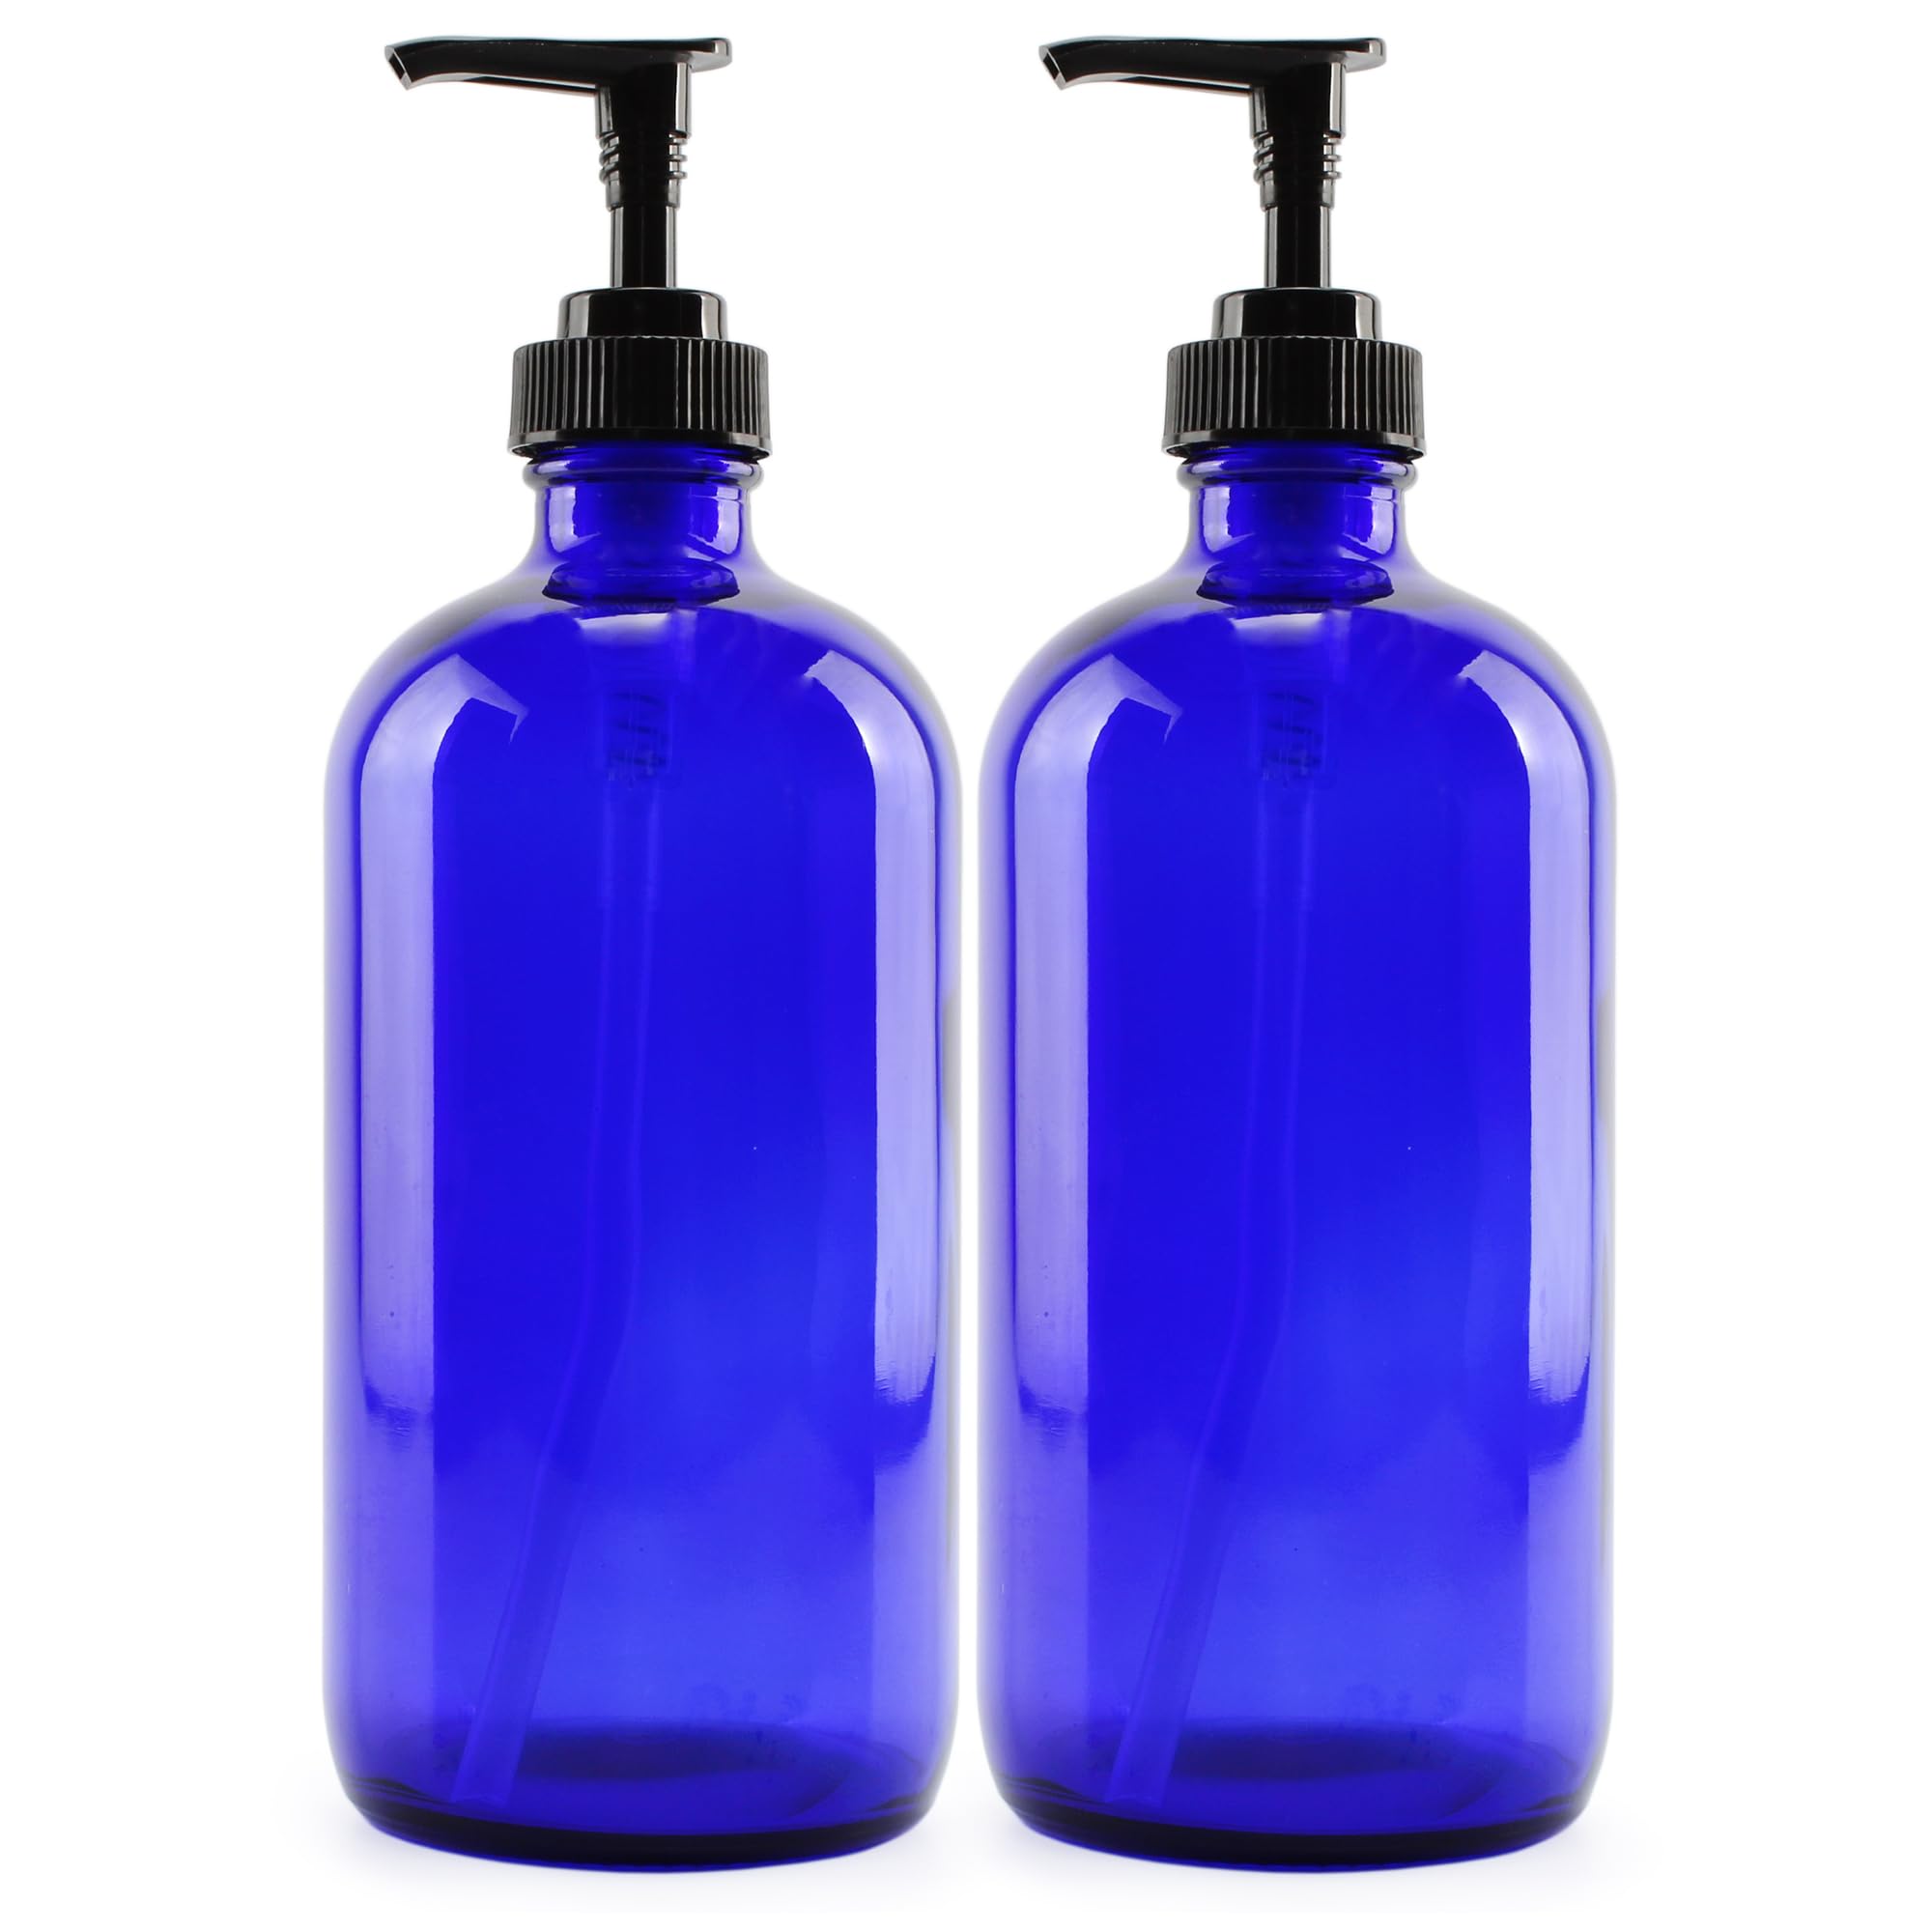 Book Cover Cornucopia 16oz Cobalt Blue Glass Bottles w/Lotion Pump Dispensers (2-Pack); Refillable Liquid Soap, Hand Care, Pump Bottles + Chalk Labels & Lids